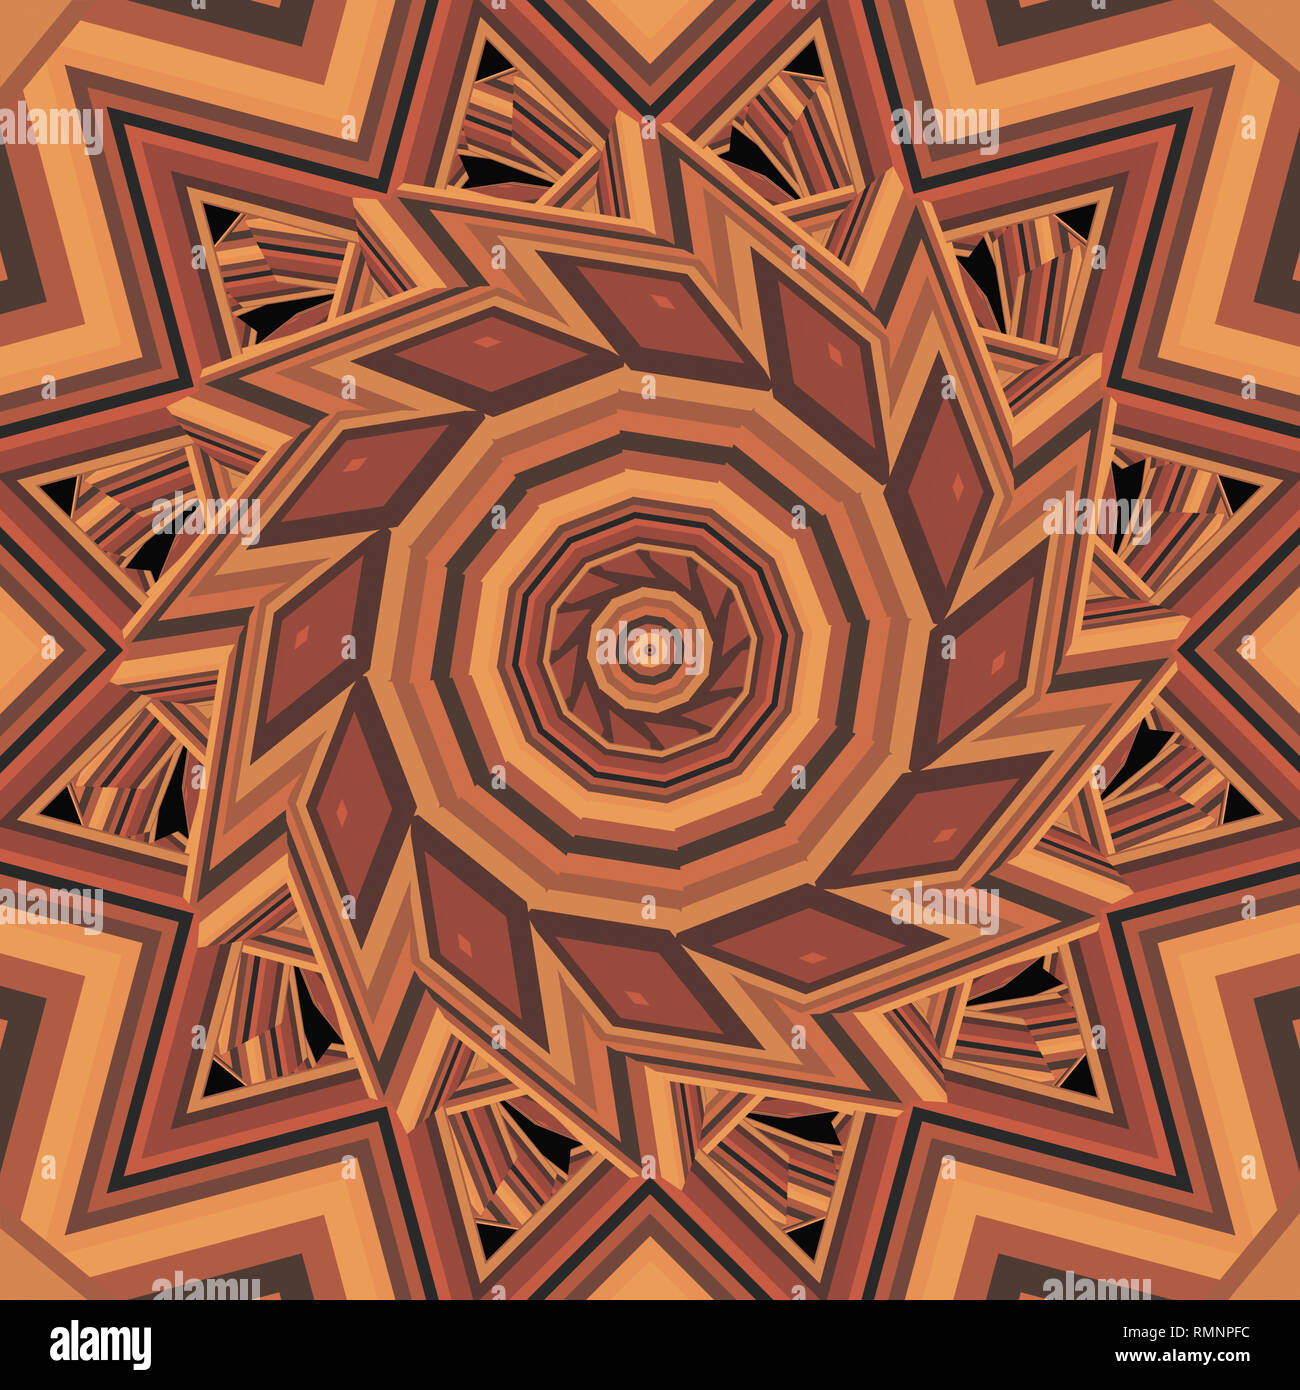 Colorido marrón cálido calidoscopio mandala ornamento fractal de yoga, clubes, espectáculos Foto de stock